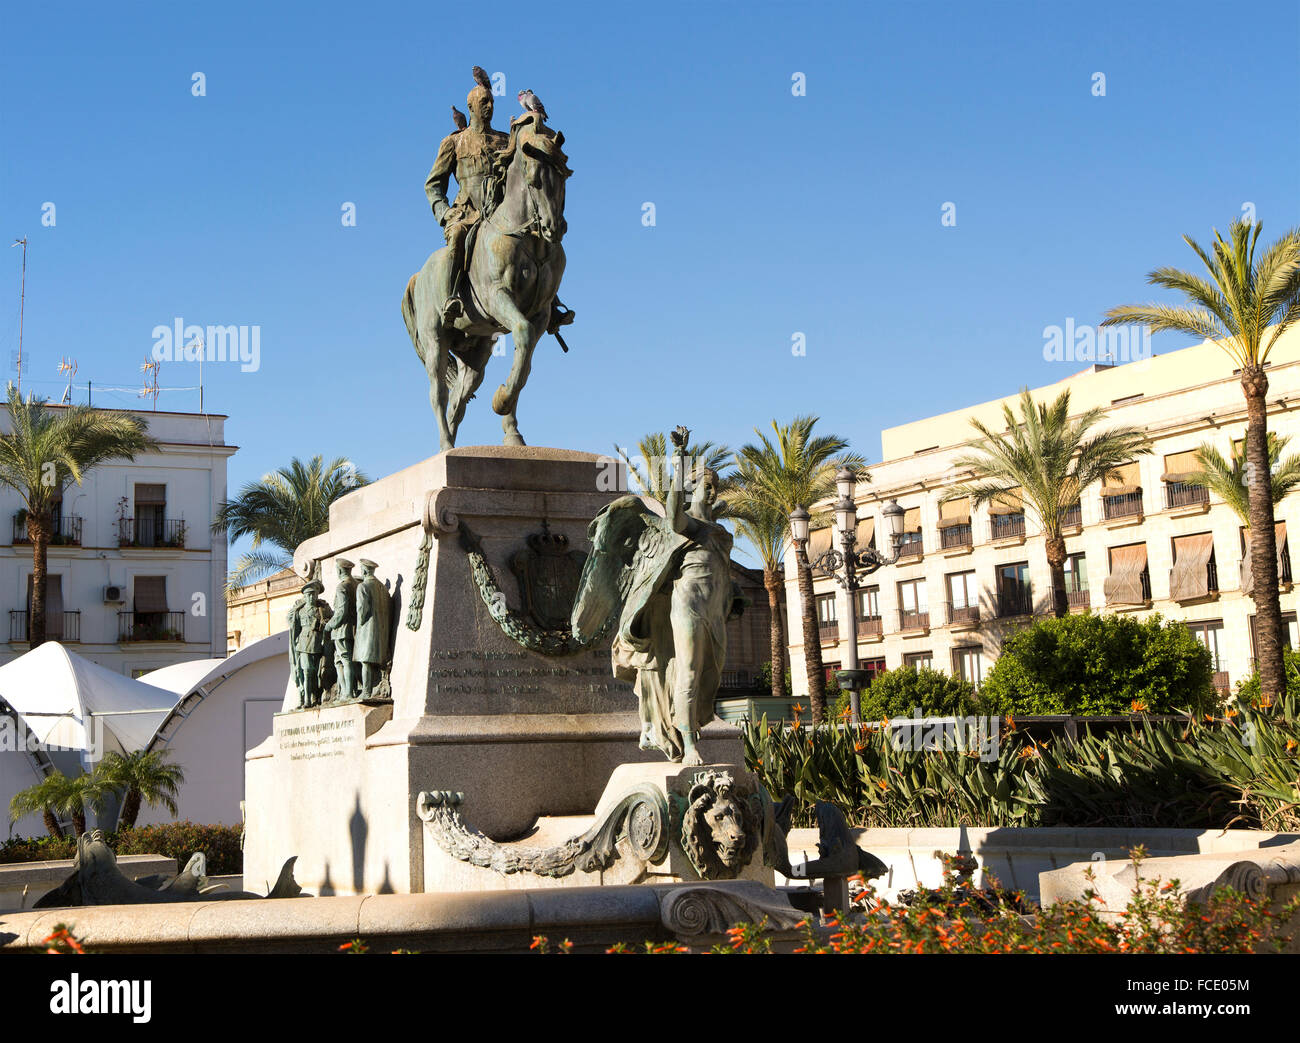 Statue of General Miguel Primo de Rivera, Plaza del Arenal, Jerez de la Frontera, Spain Stock Photo